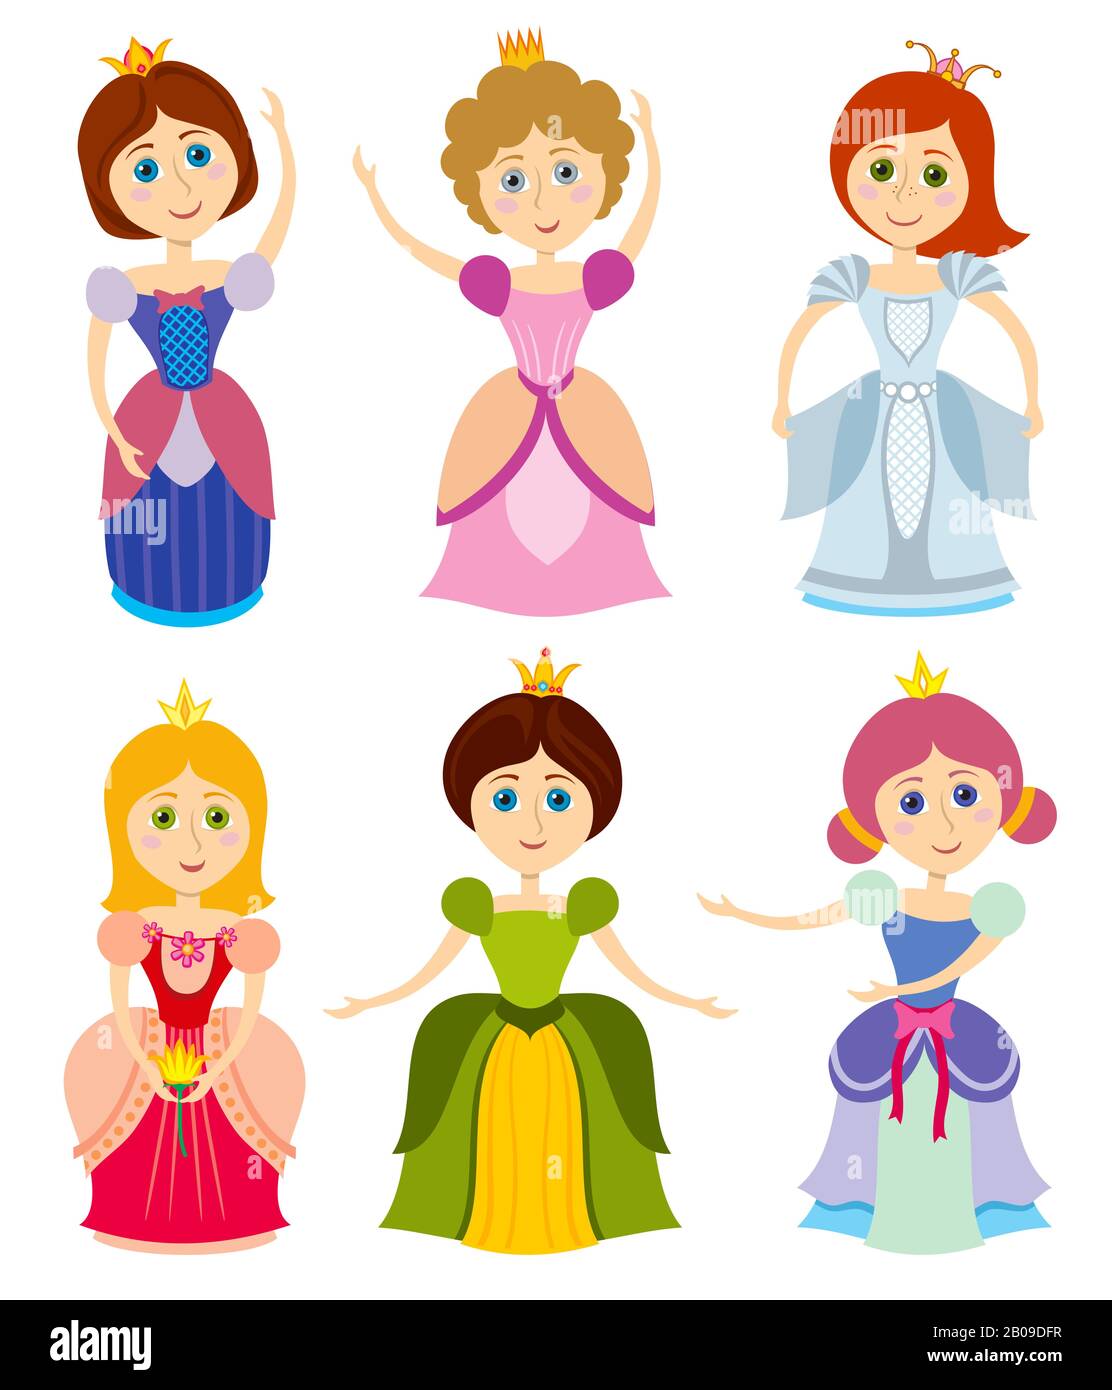 Kleine niedliche Prinzessinnen zeigen den Modevektor der Brautmädchen für Kinder. Junge Prinzessin im Kleid, Elegance Person Prinzenillustration Stock Vektor